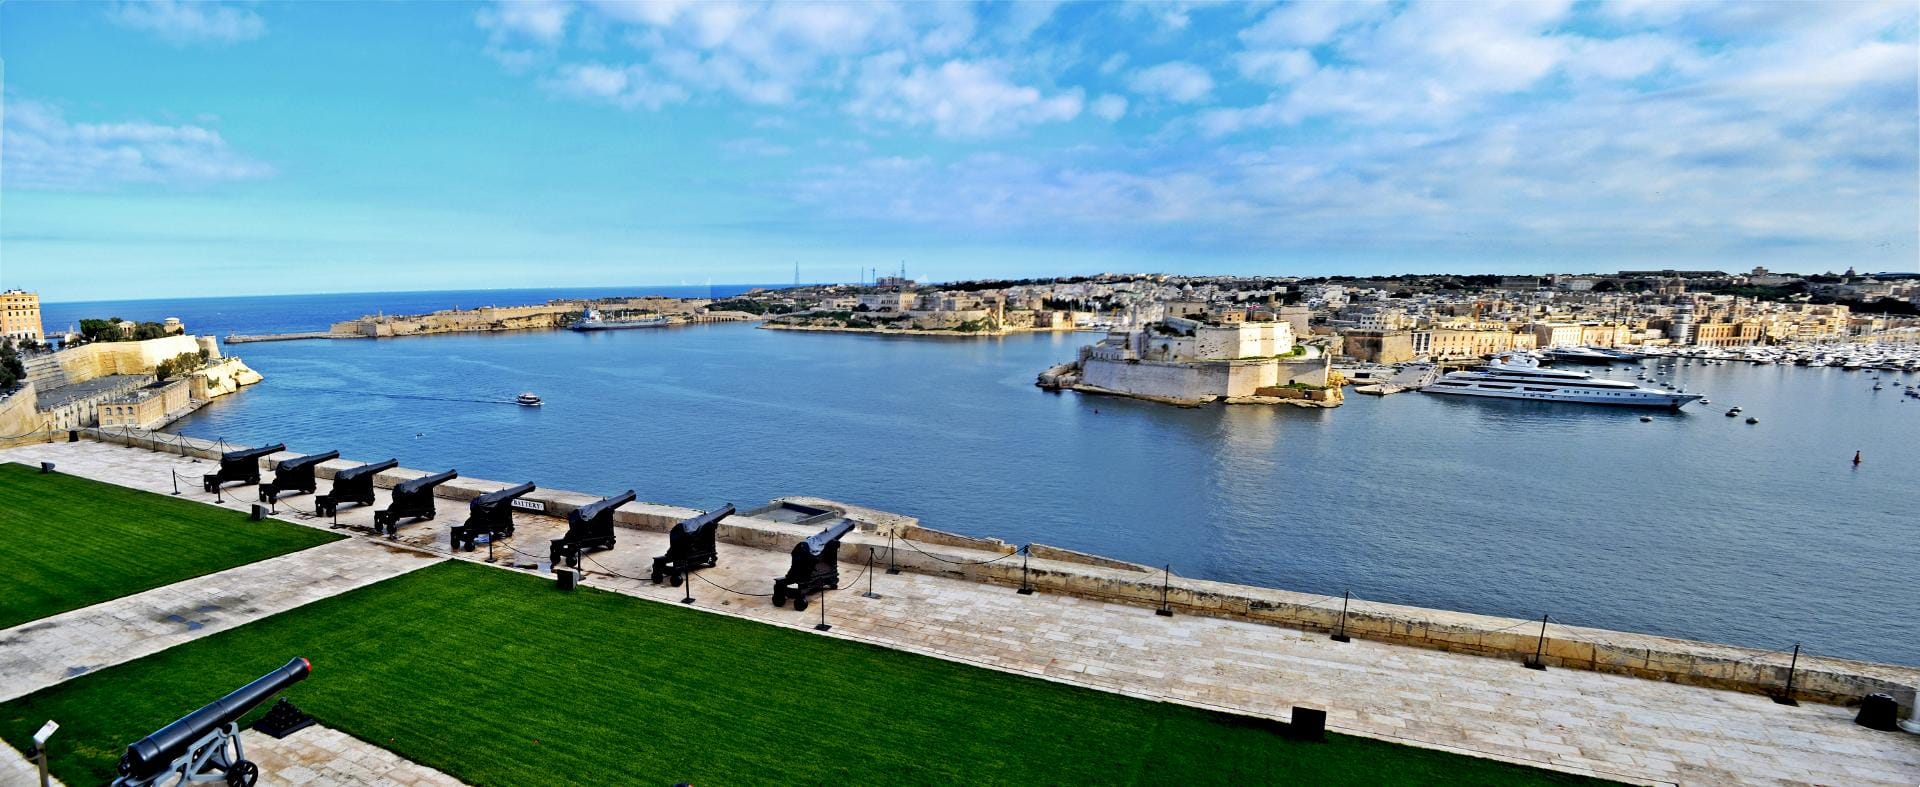 Blick auf den Hafen von Valletta.